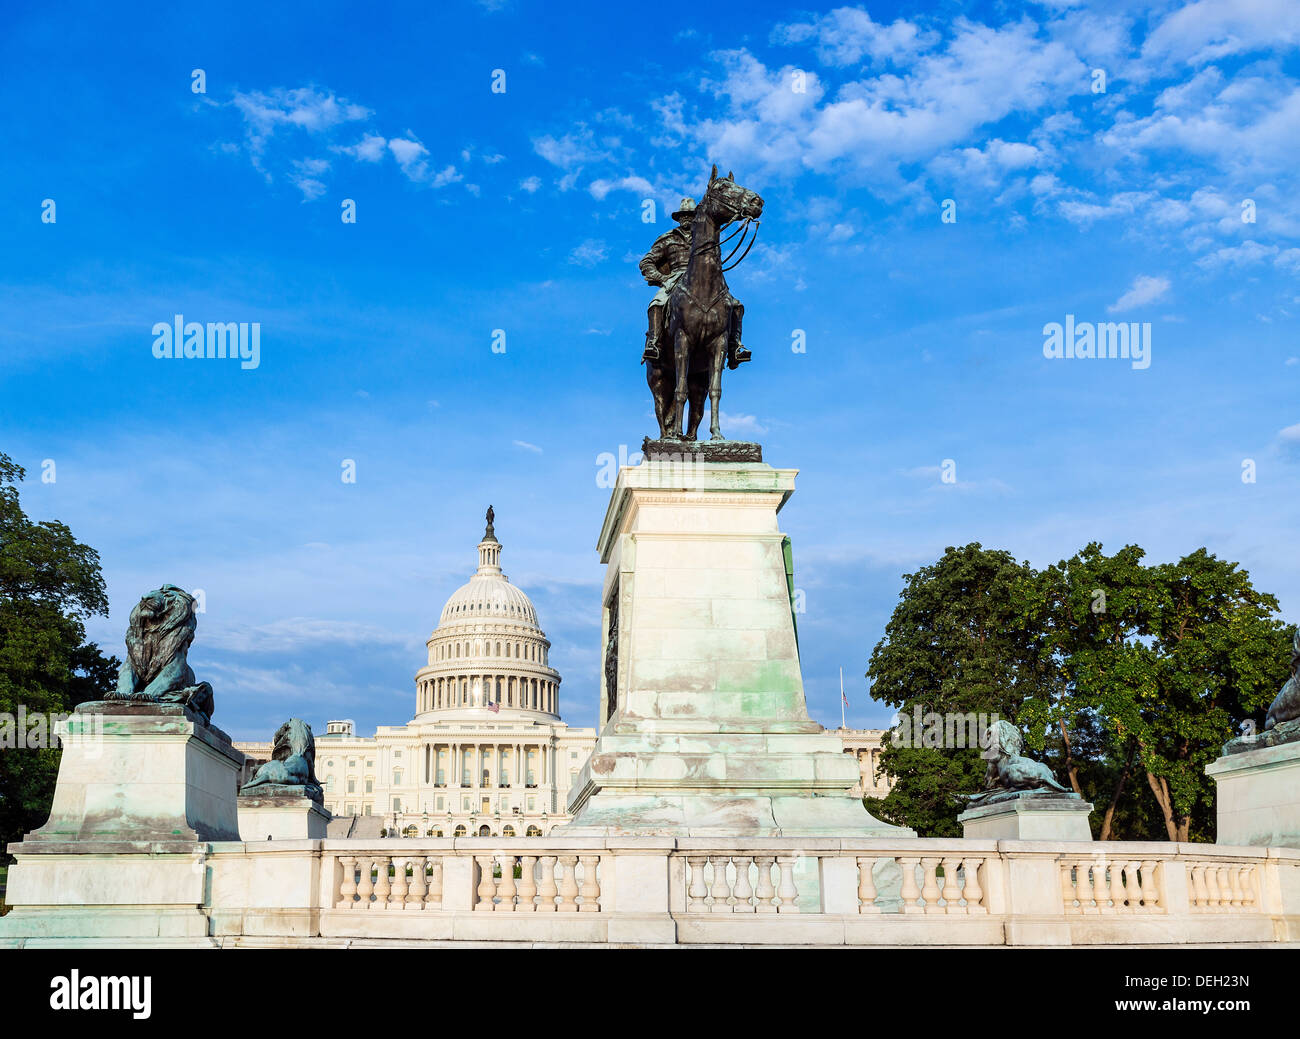 Ulysses S. Grant Memorial et Capitole, Washington D.C., États-Unis Banque D'Images